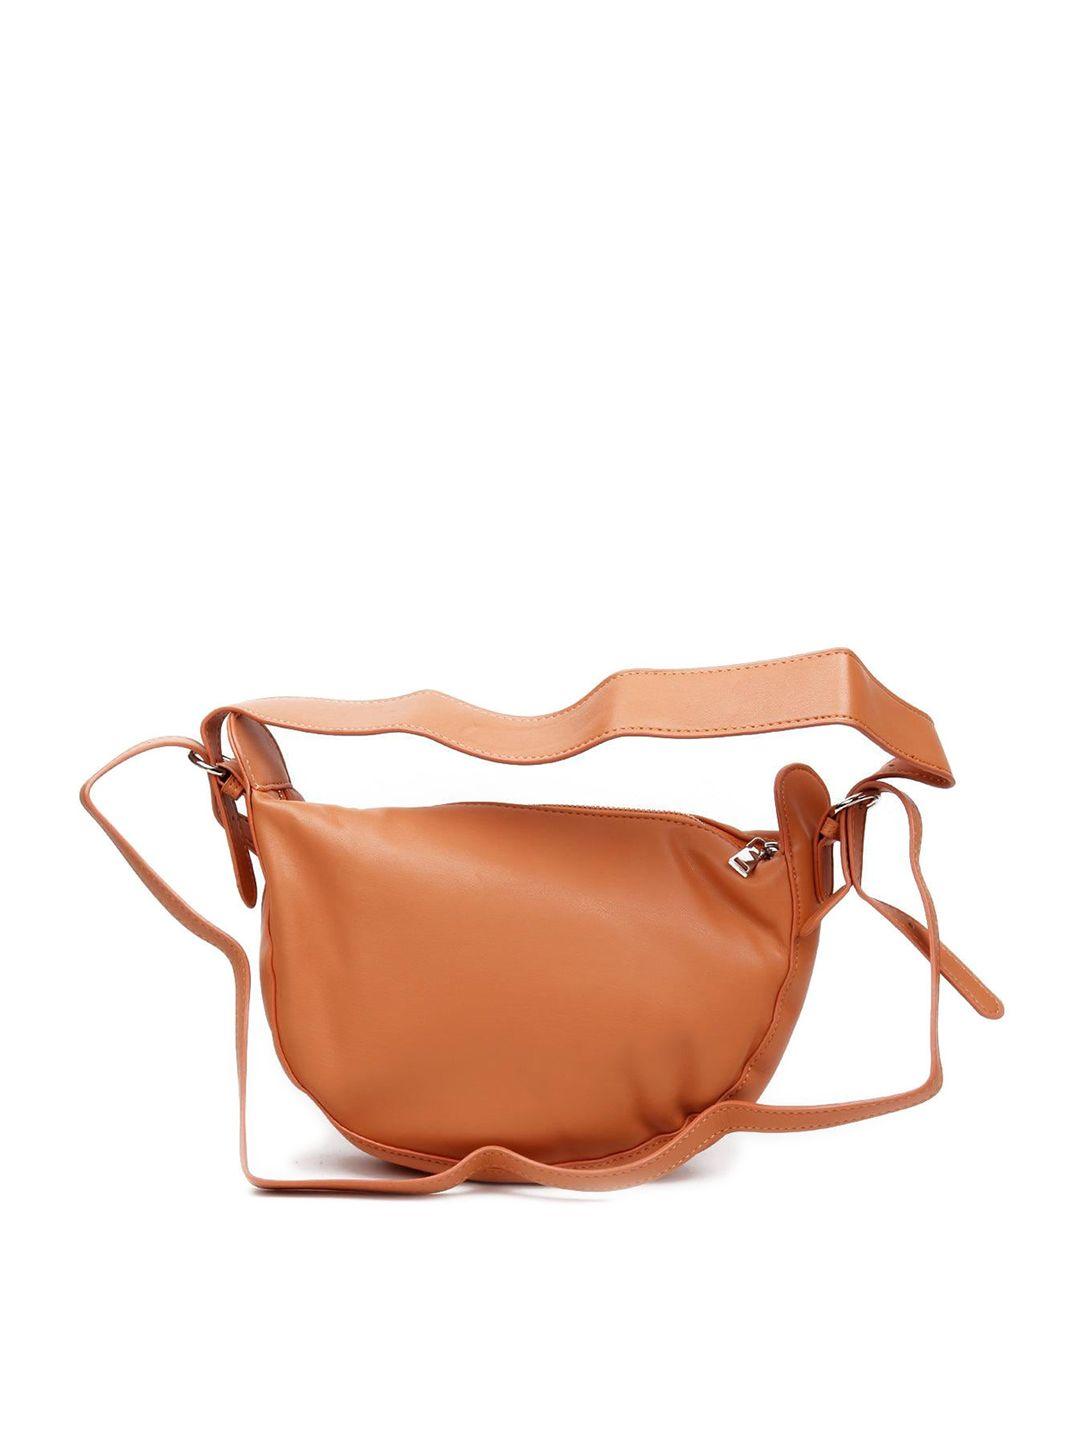 odette leather structured sling bag